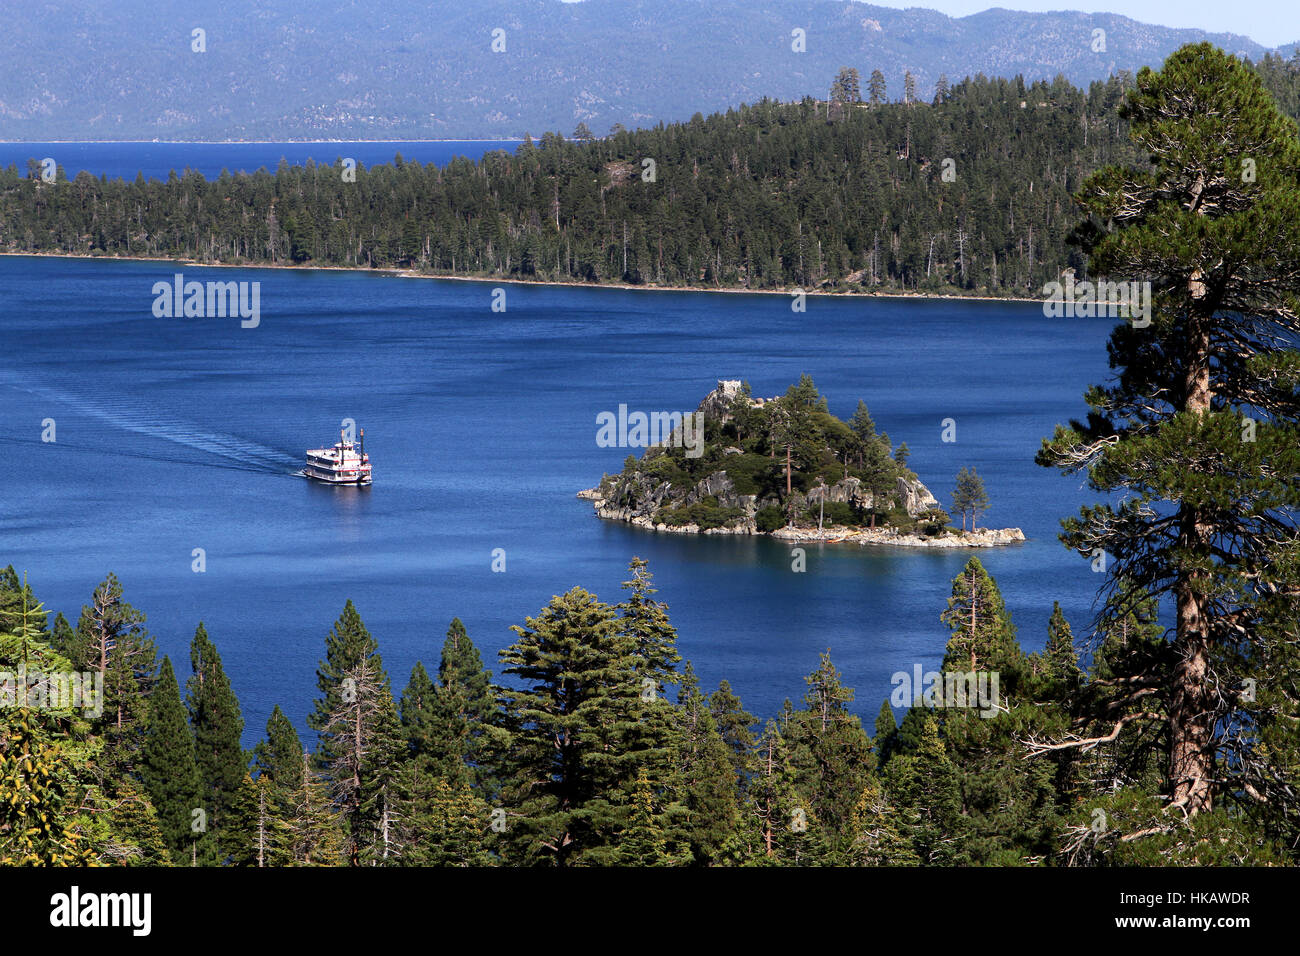 Bateau à aubes croisières vers Fannette Island sur le lac Tahoe en Californie, USA. Banque D'Images